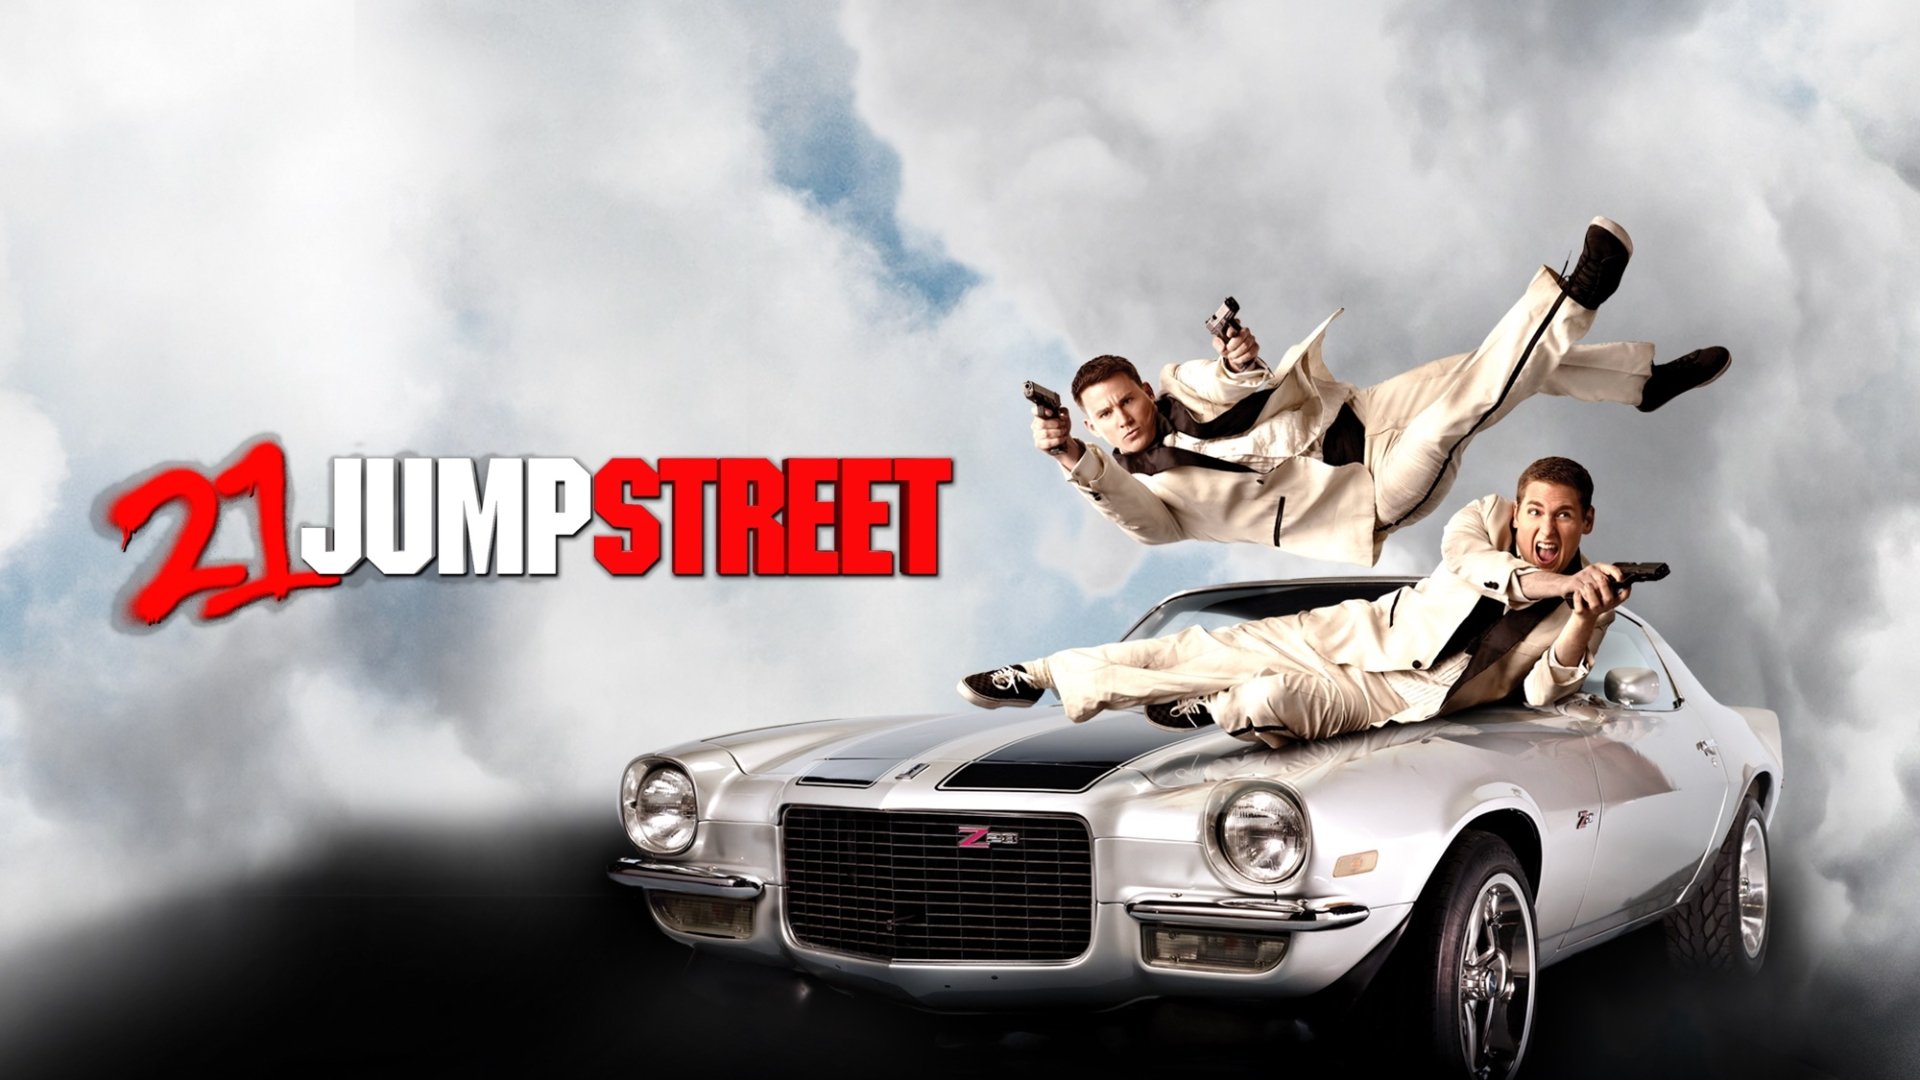 21 jump street full movie online freee